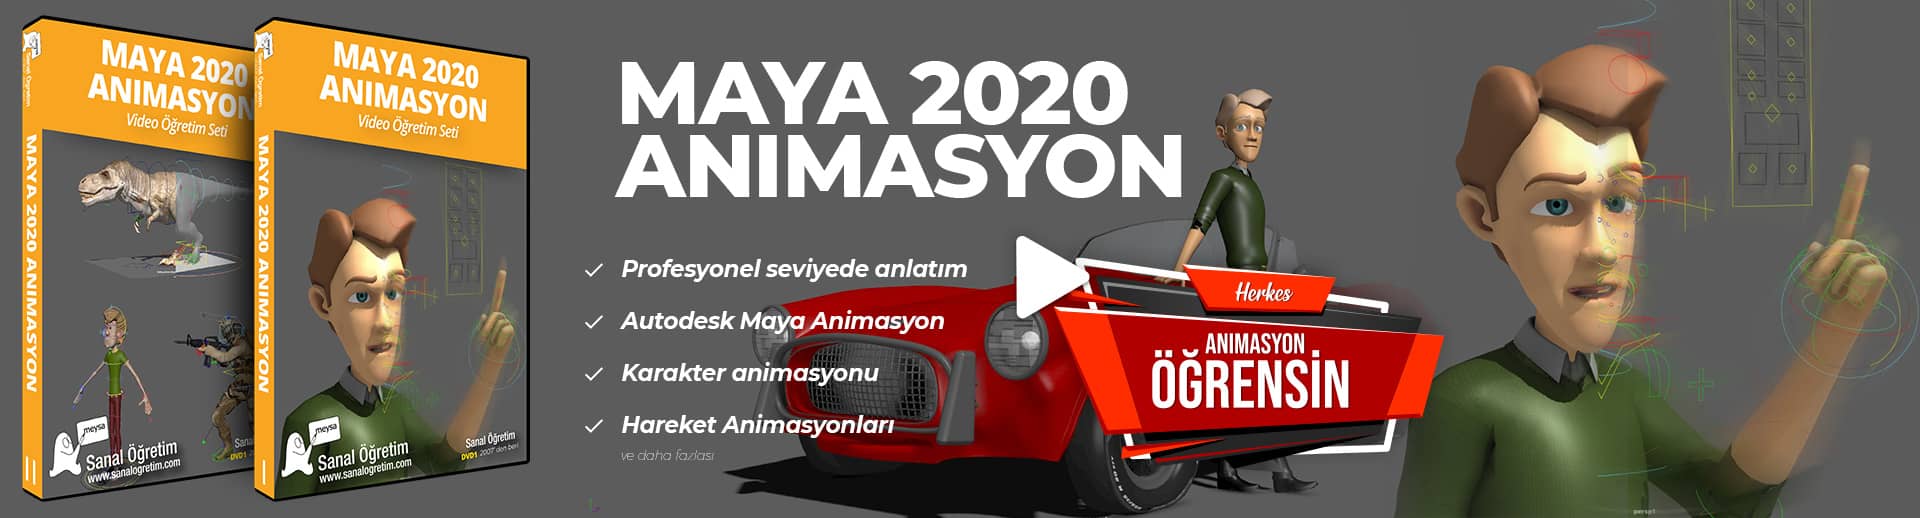 Maya 2020 Animasyon